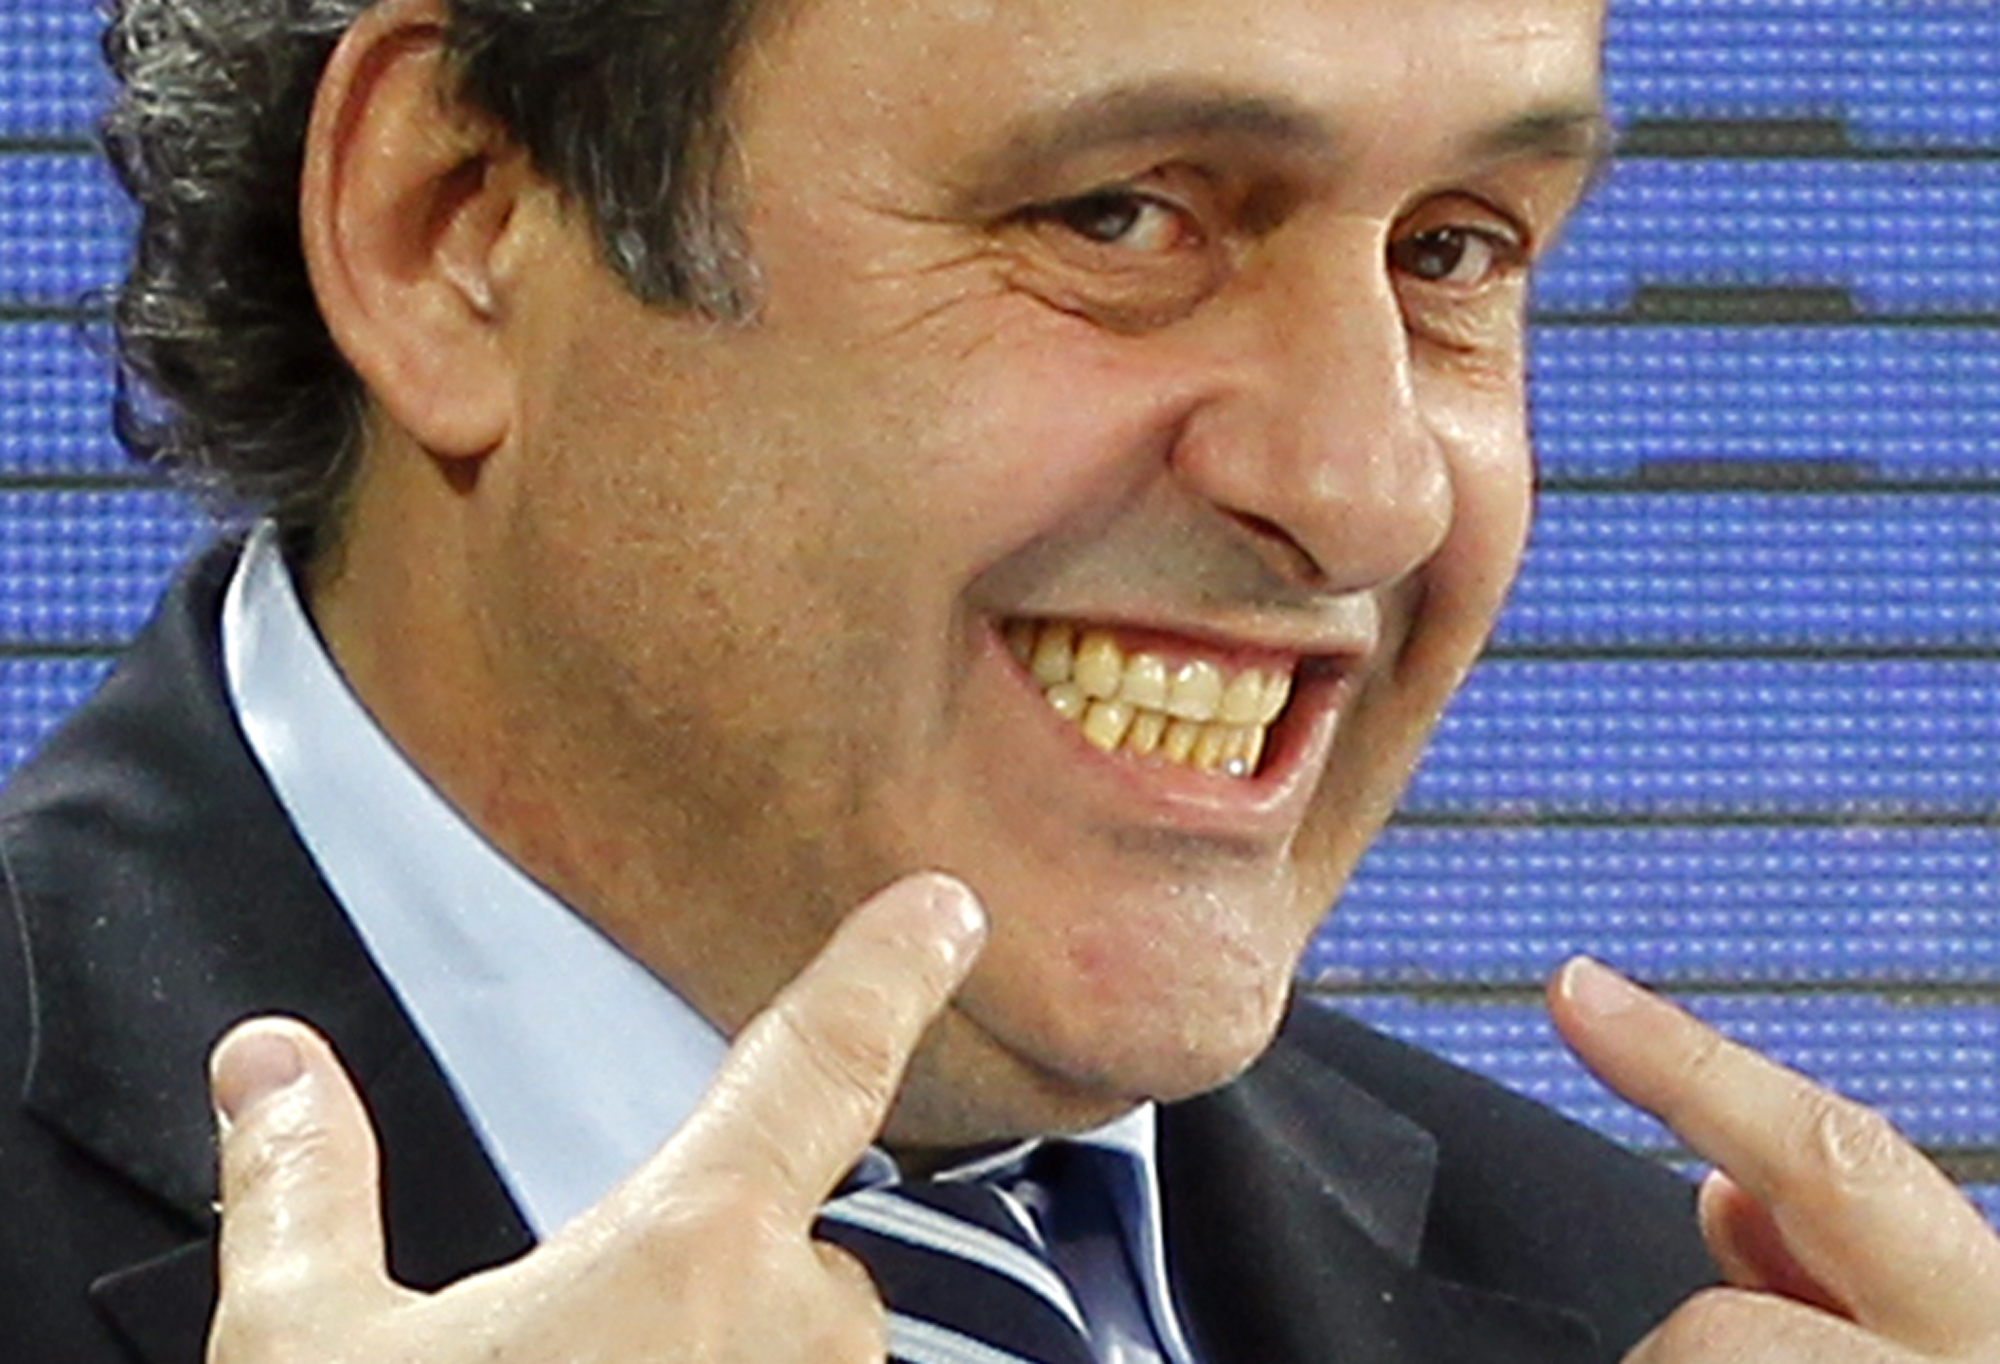 Michel Platini - nu ordförande för Uefa - tidigare en duktig fotbollsspelare med sinne för humor.